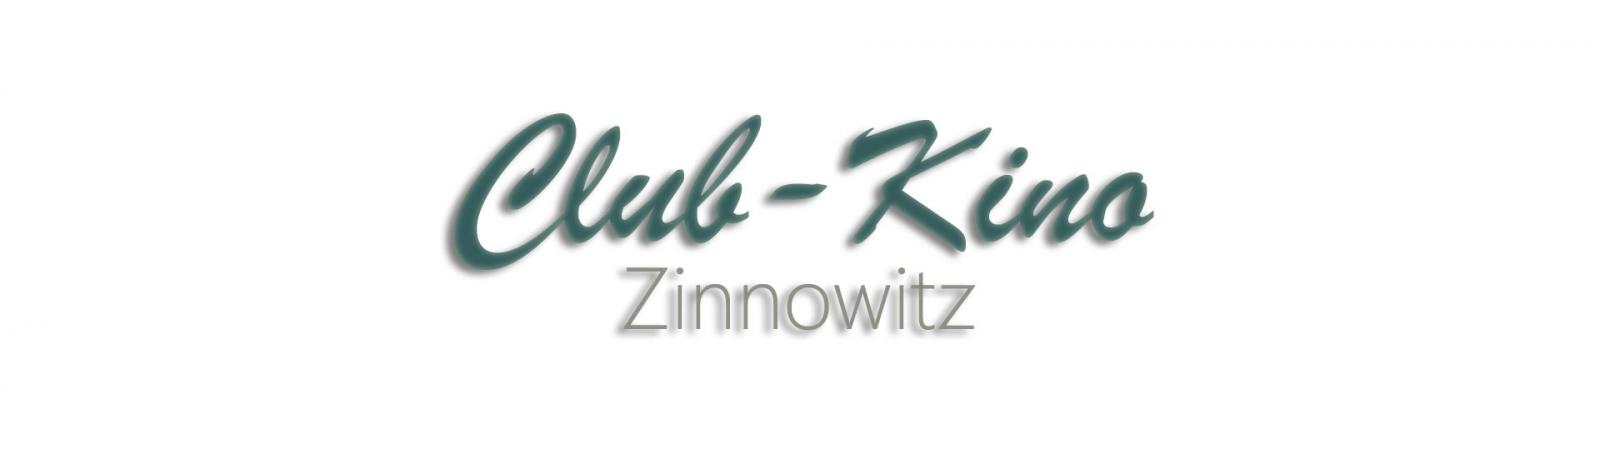 Club-Kino Zinnowitz